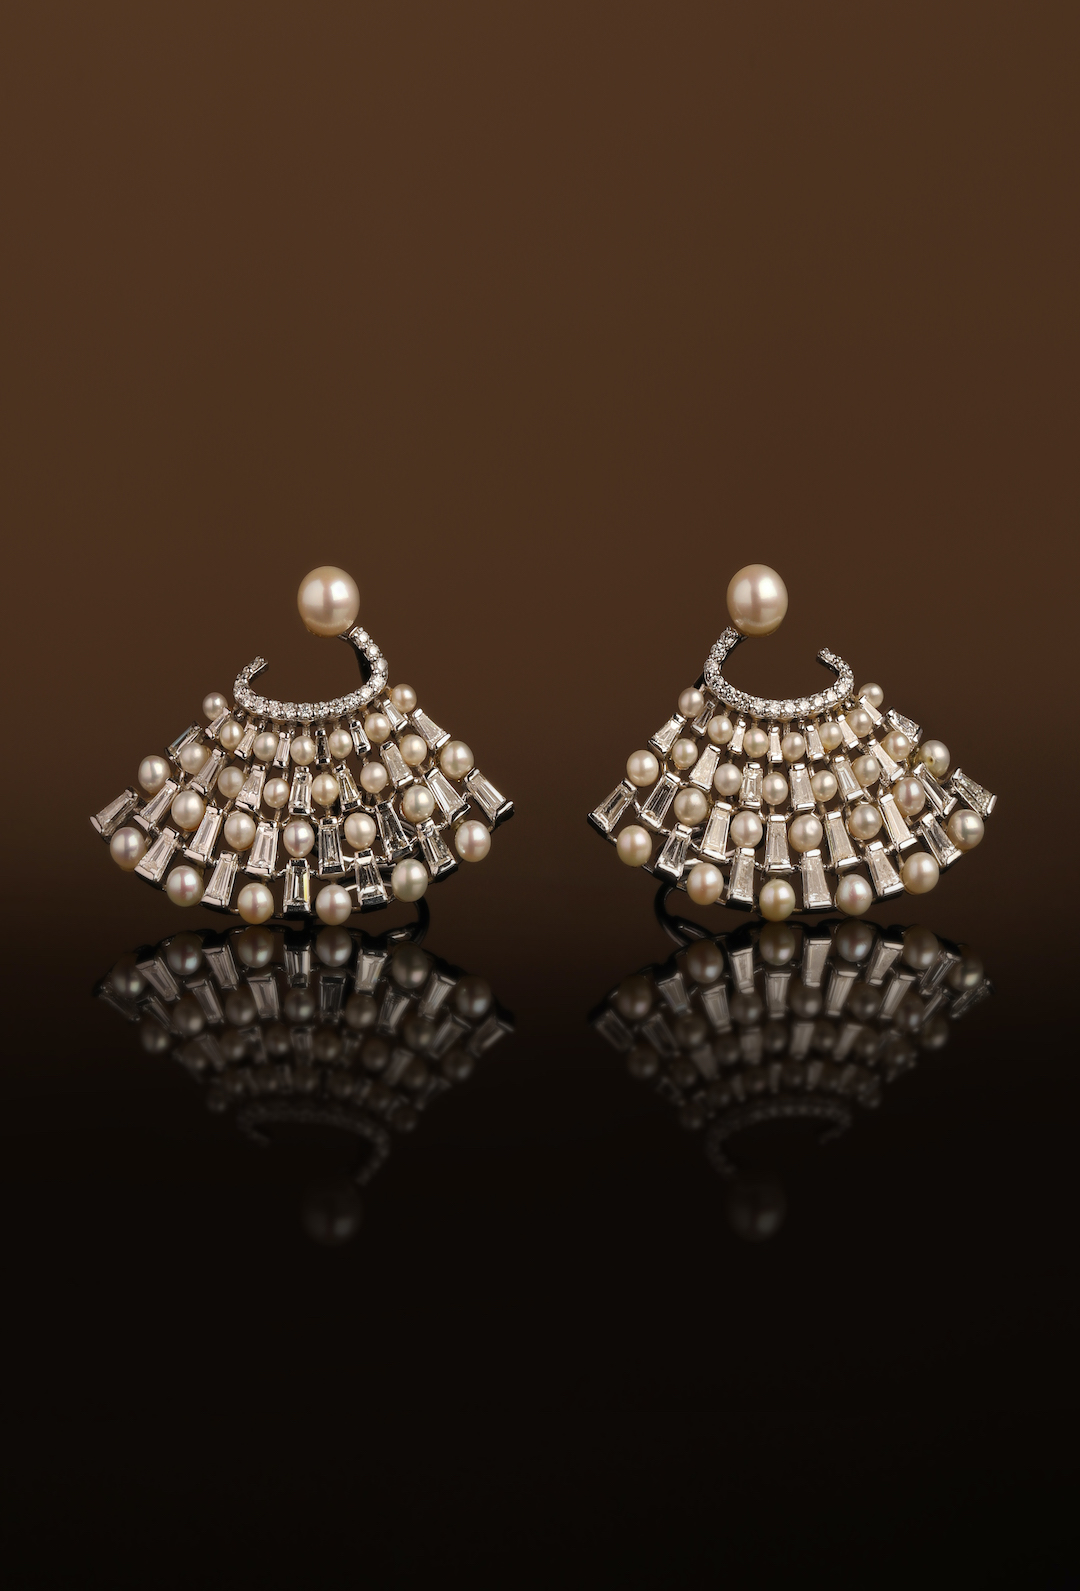 Baguette and pearl fan earrings